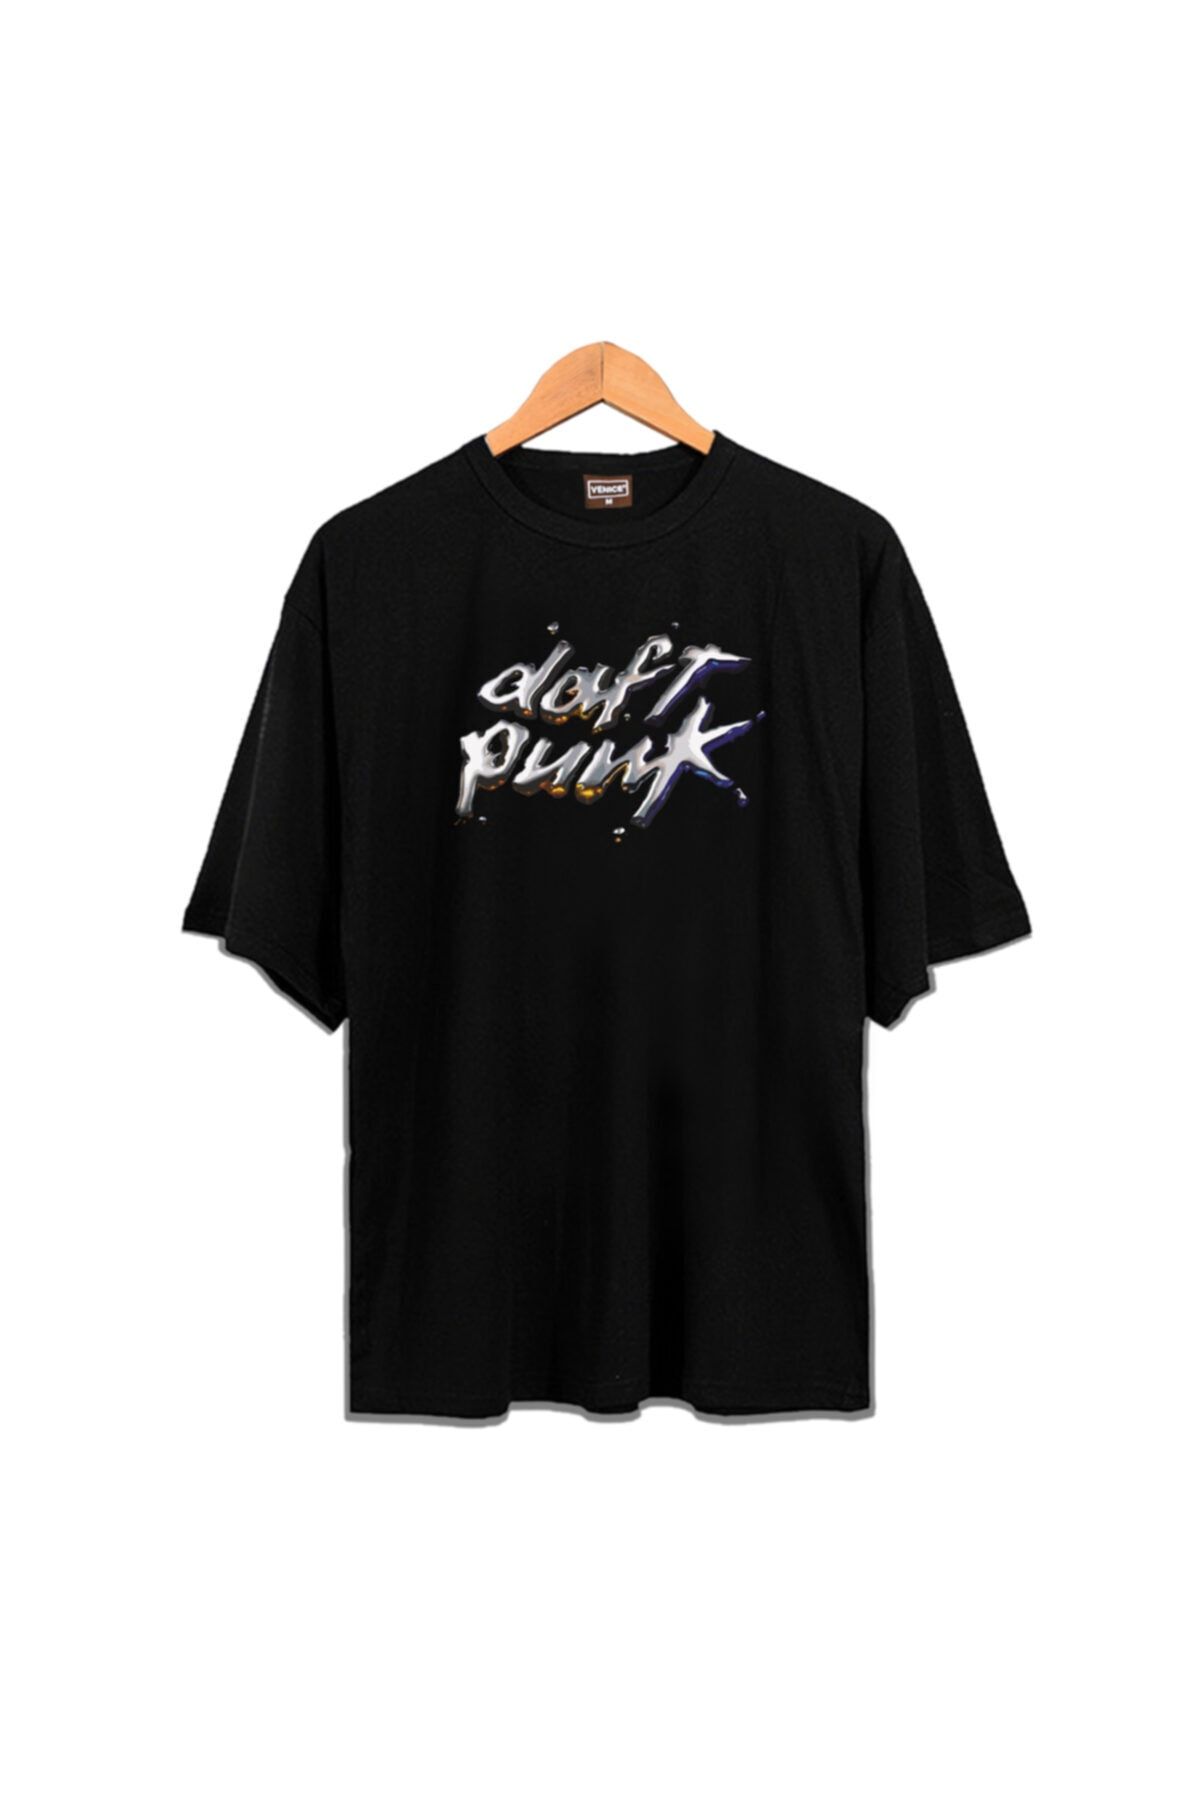 VENICE Clothing Unisex Siyah Oversize Daft Punk T-shirt